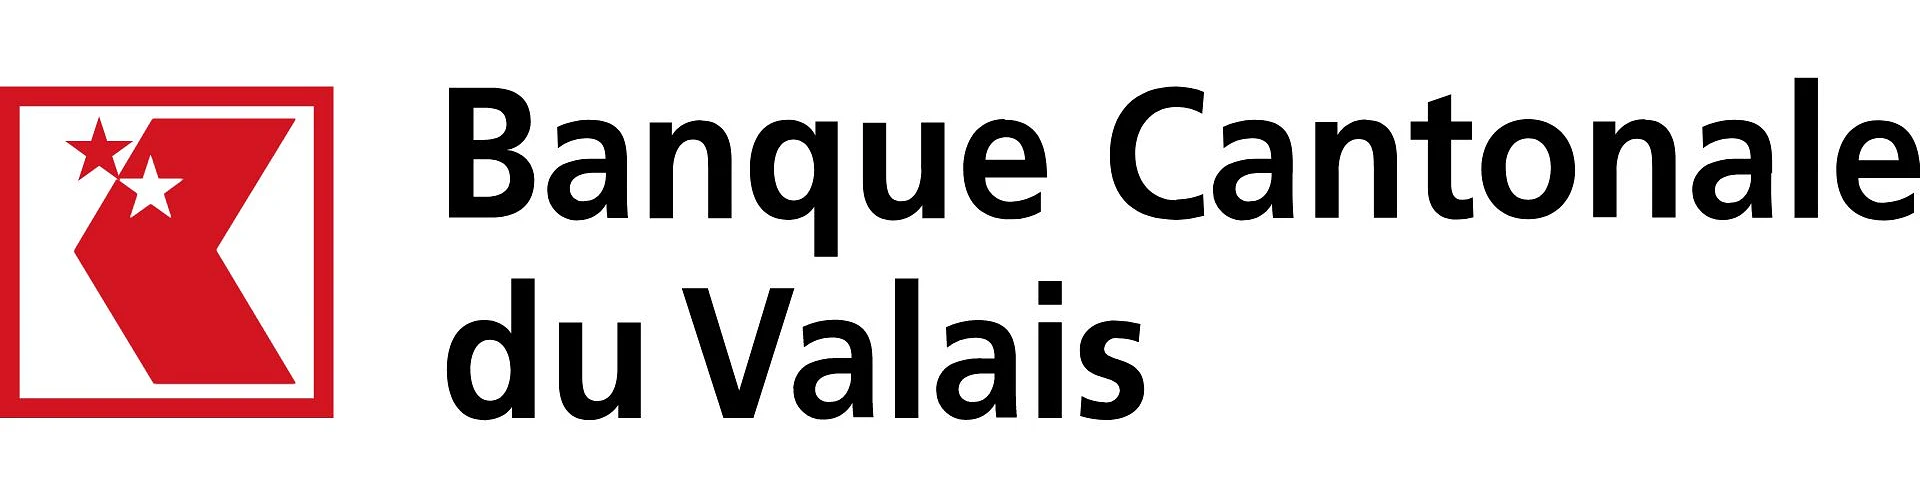 Banque cantonale du Valais